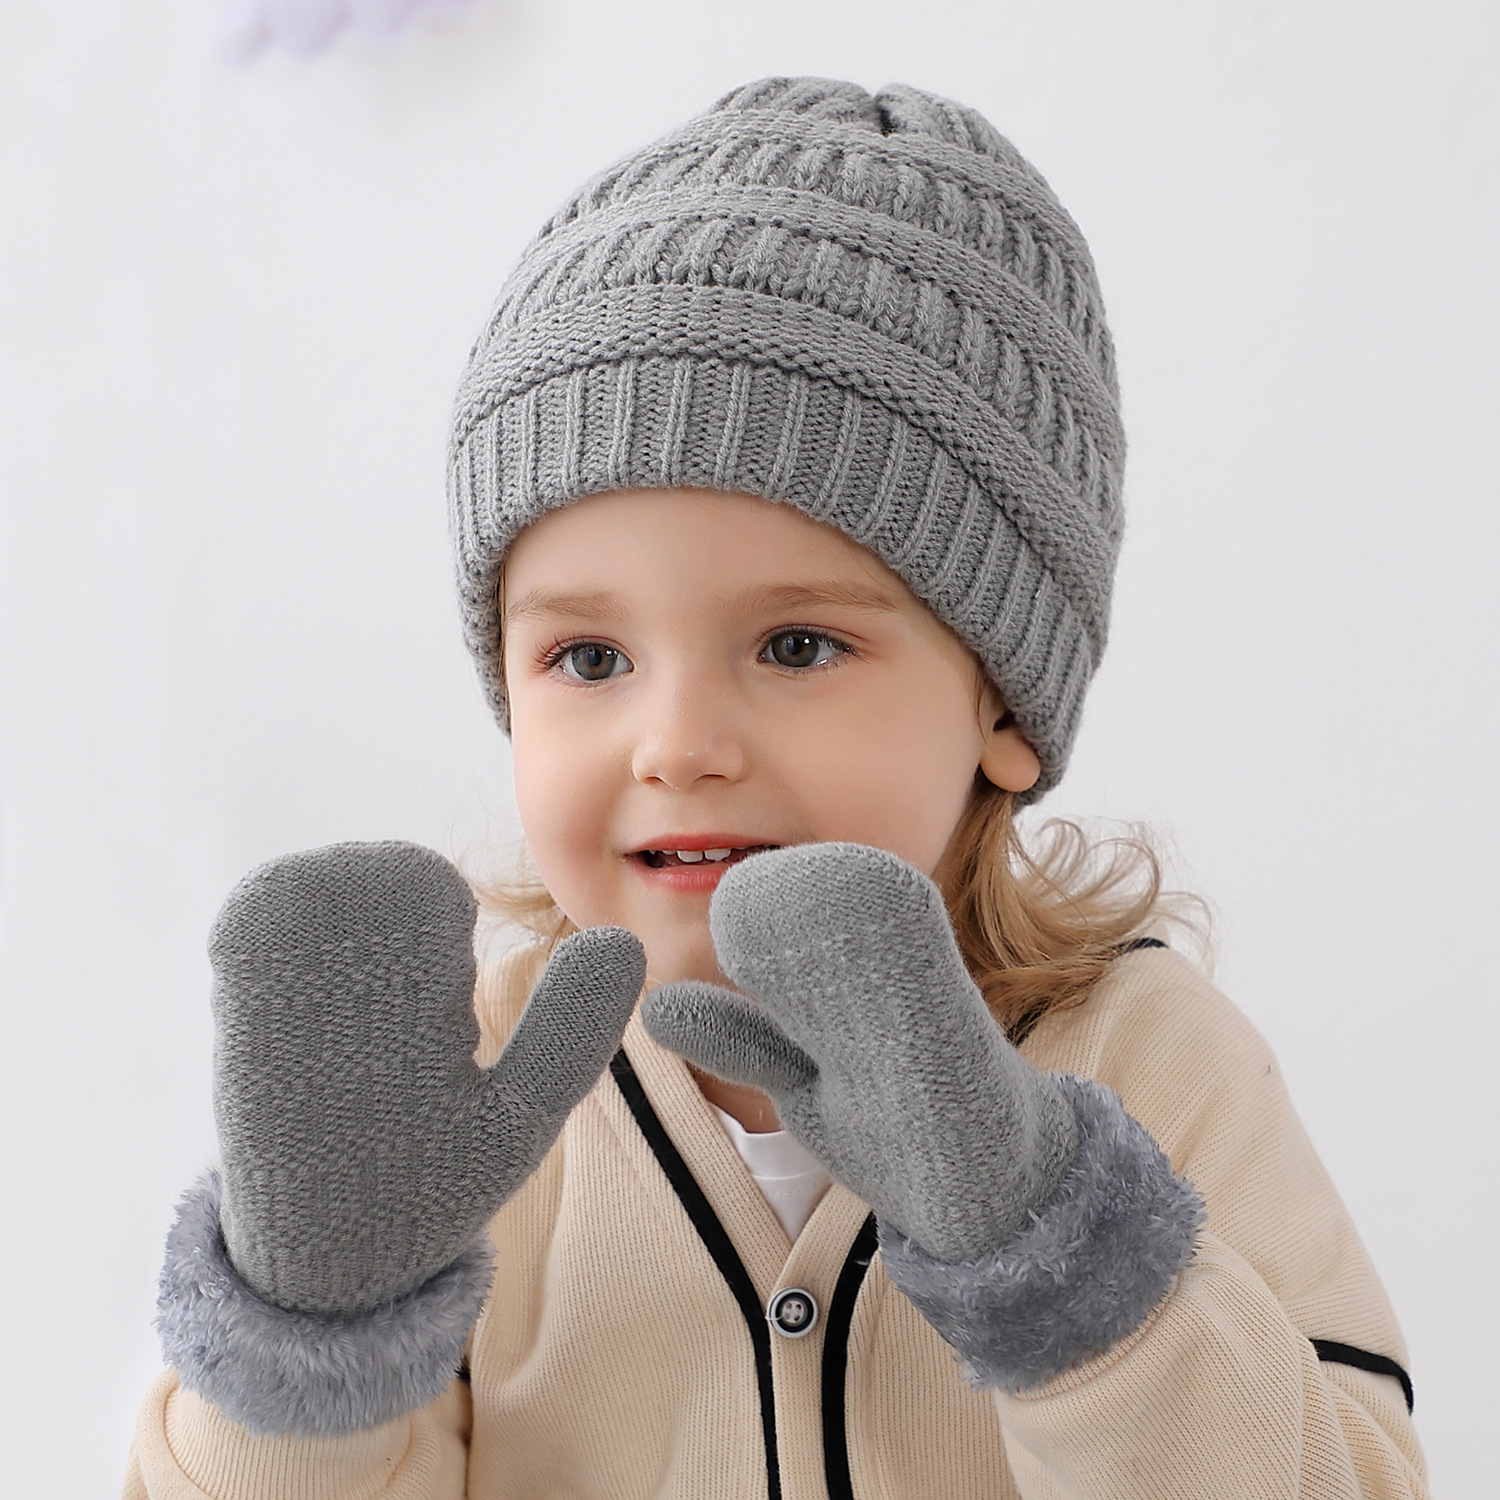 新款童帽冬季加厚保暖儿童针织帽糖果色套头护耳大毛球毛线帽外贸-阿里巴巴